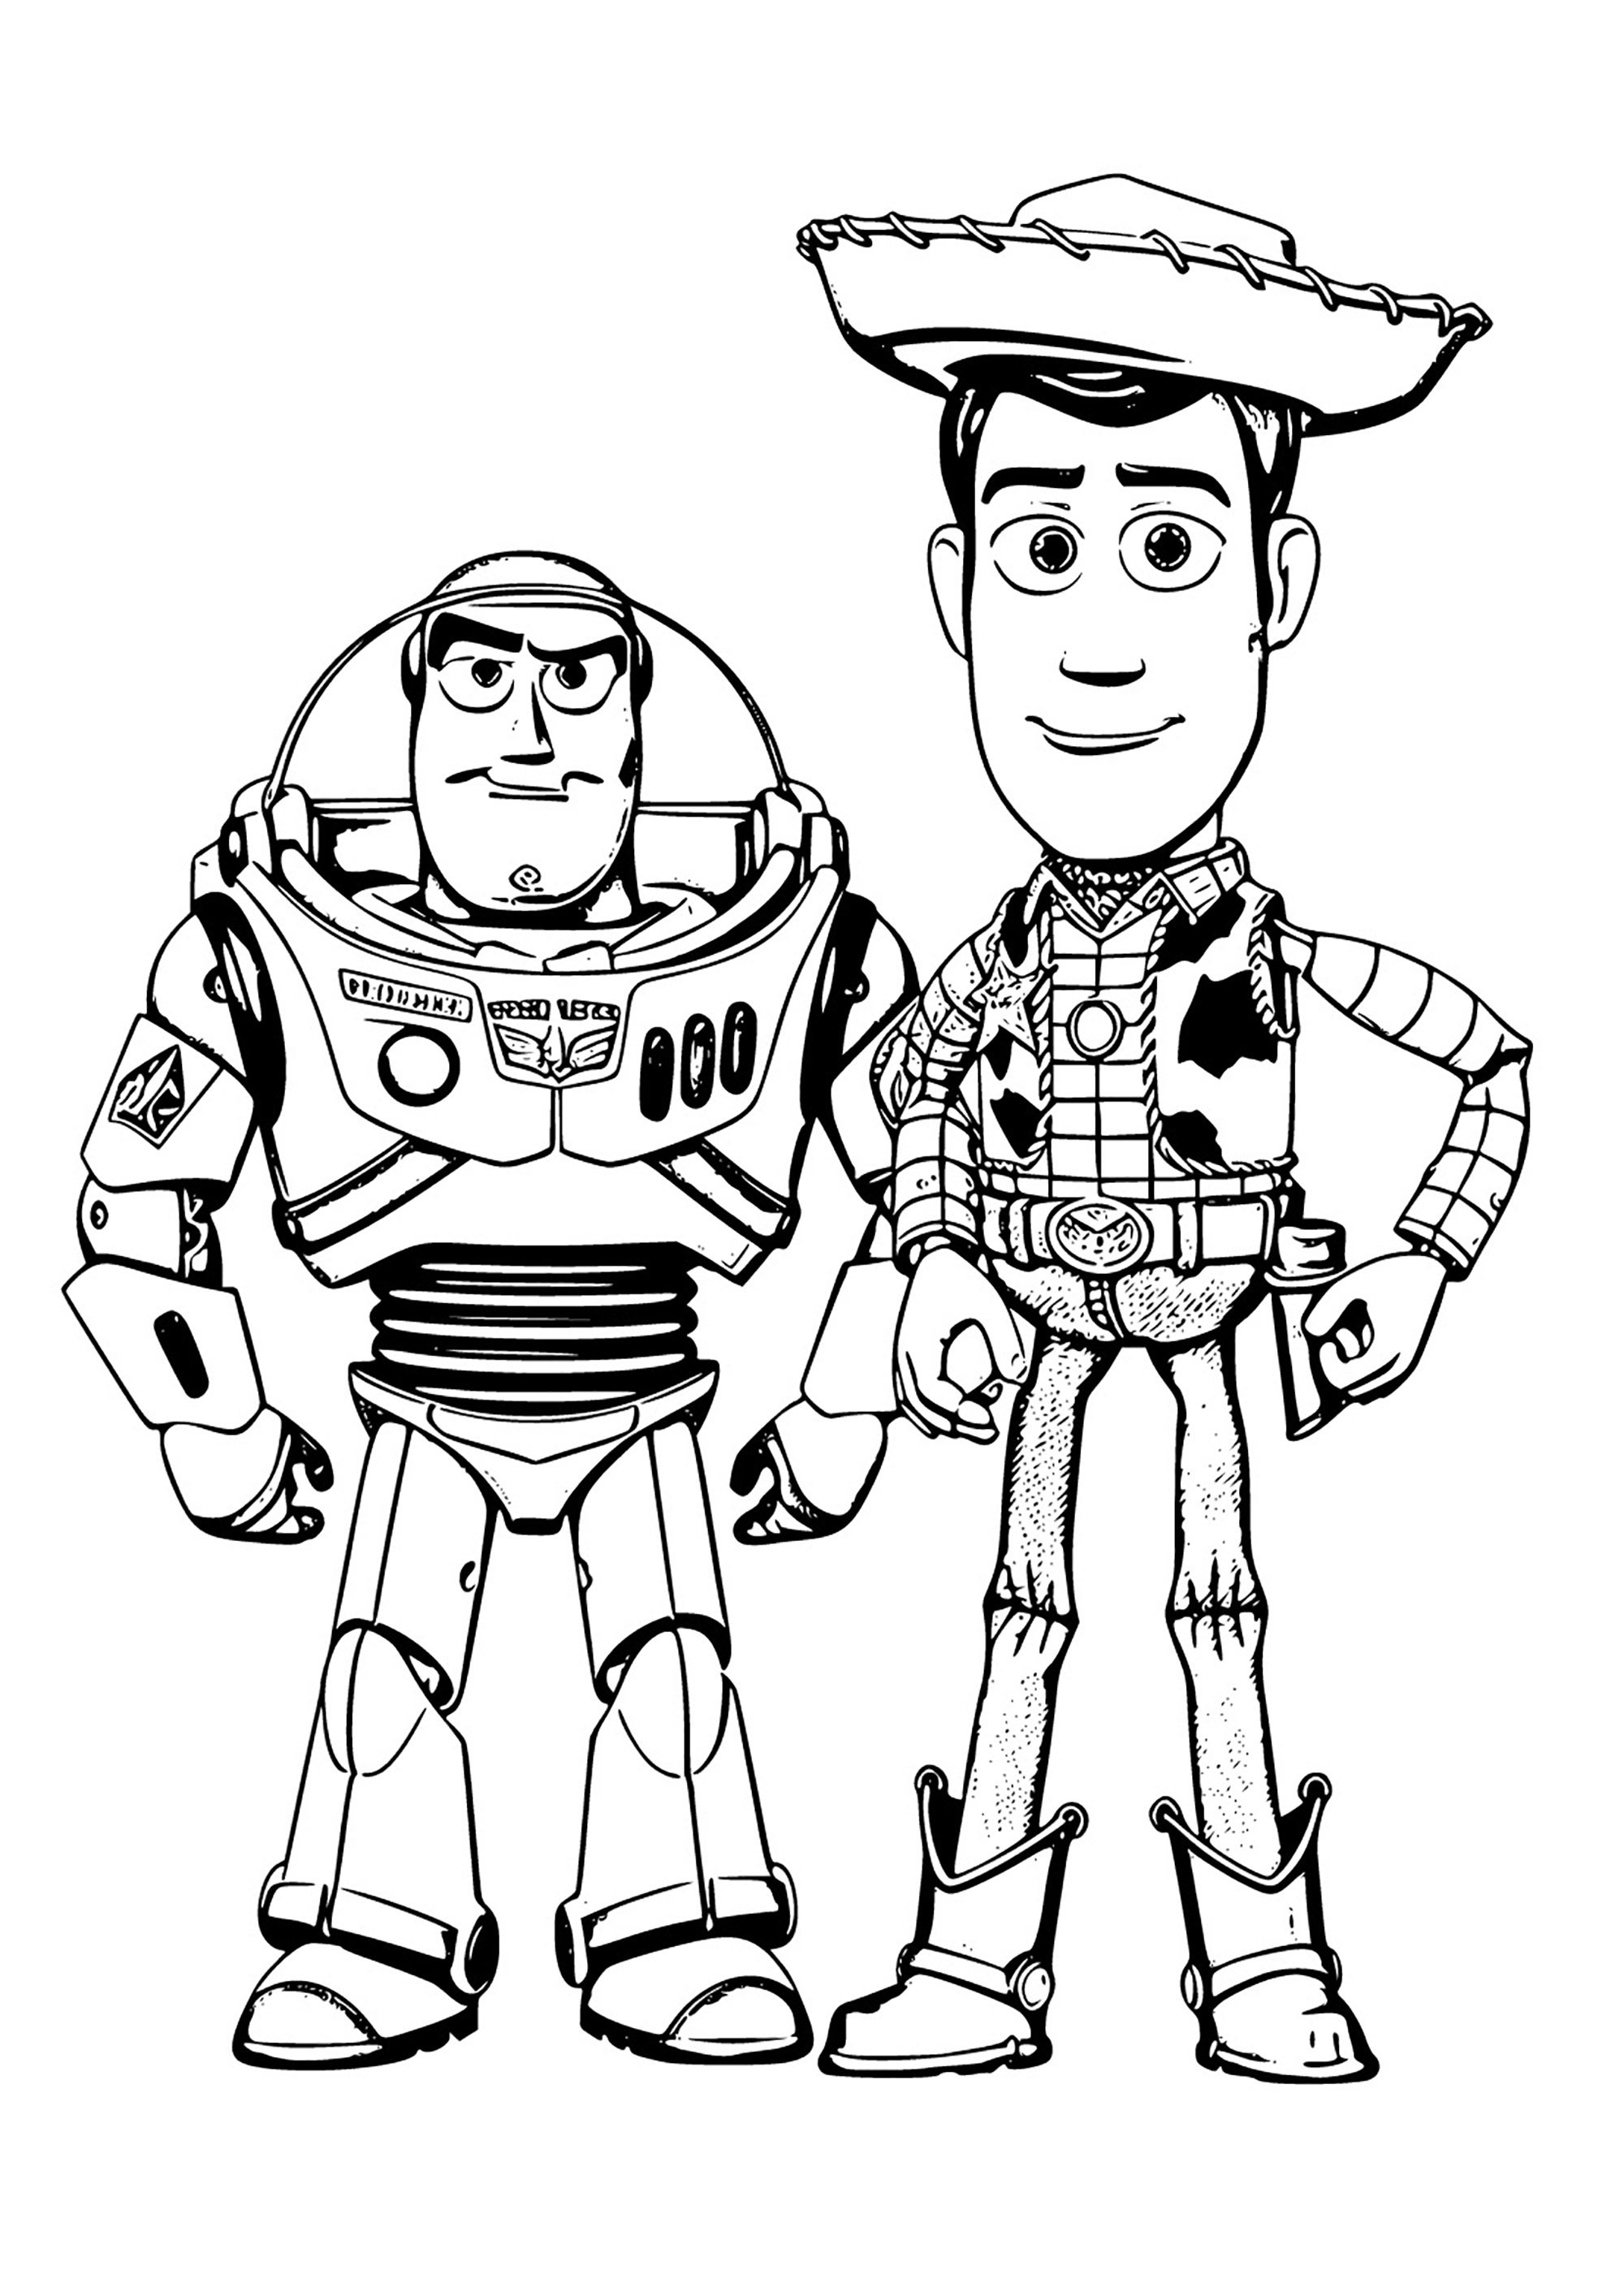 Libro para colorear de Woody y Buzz. Un diseño con un estilo muy particular, alejado de la representación 3D de las películas